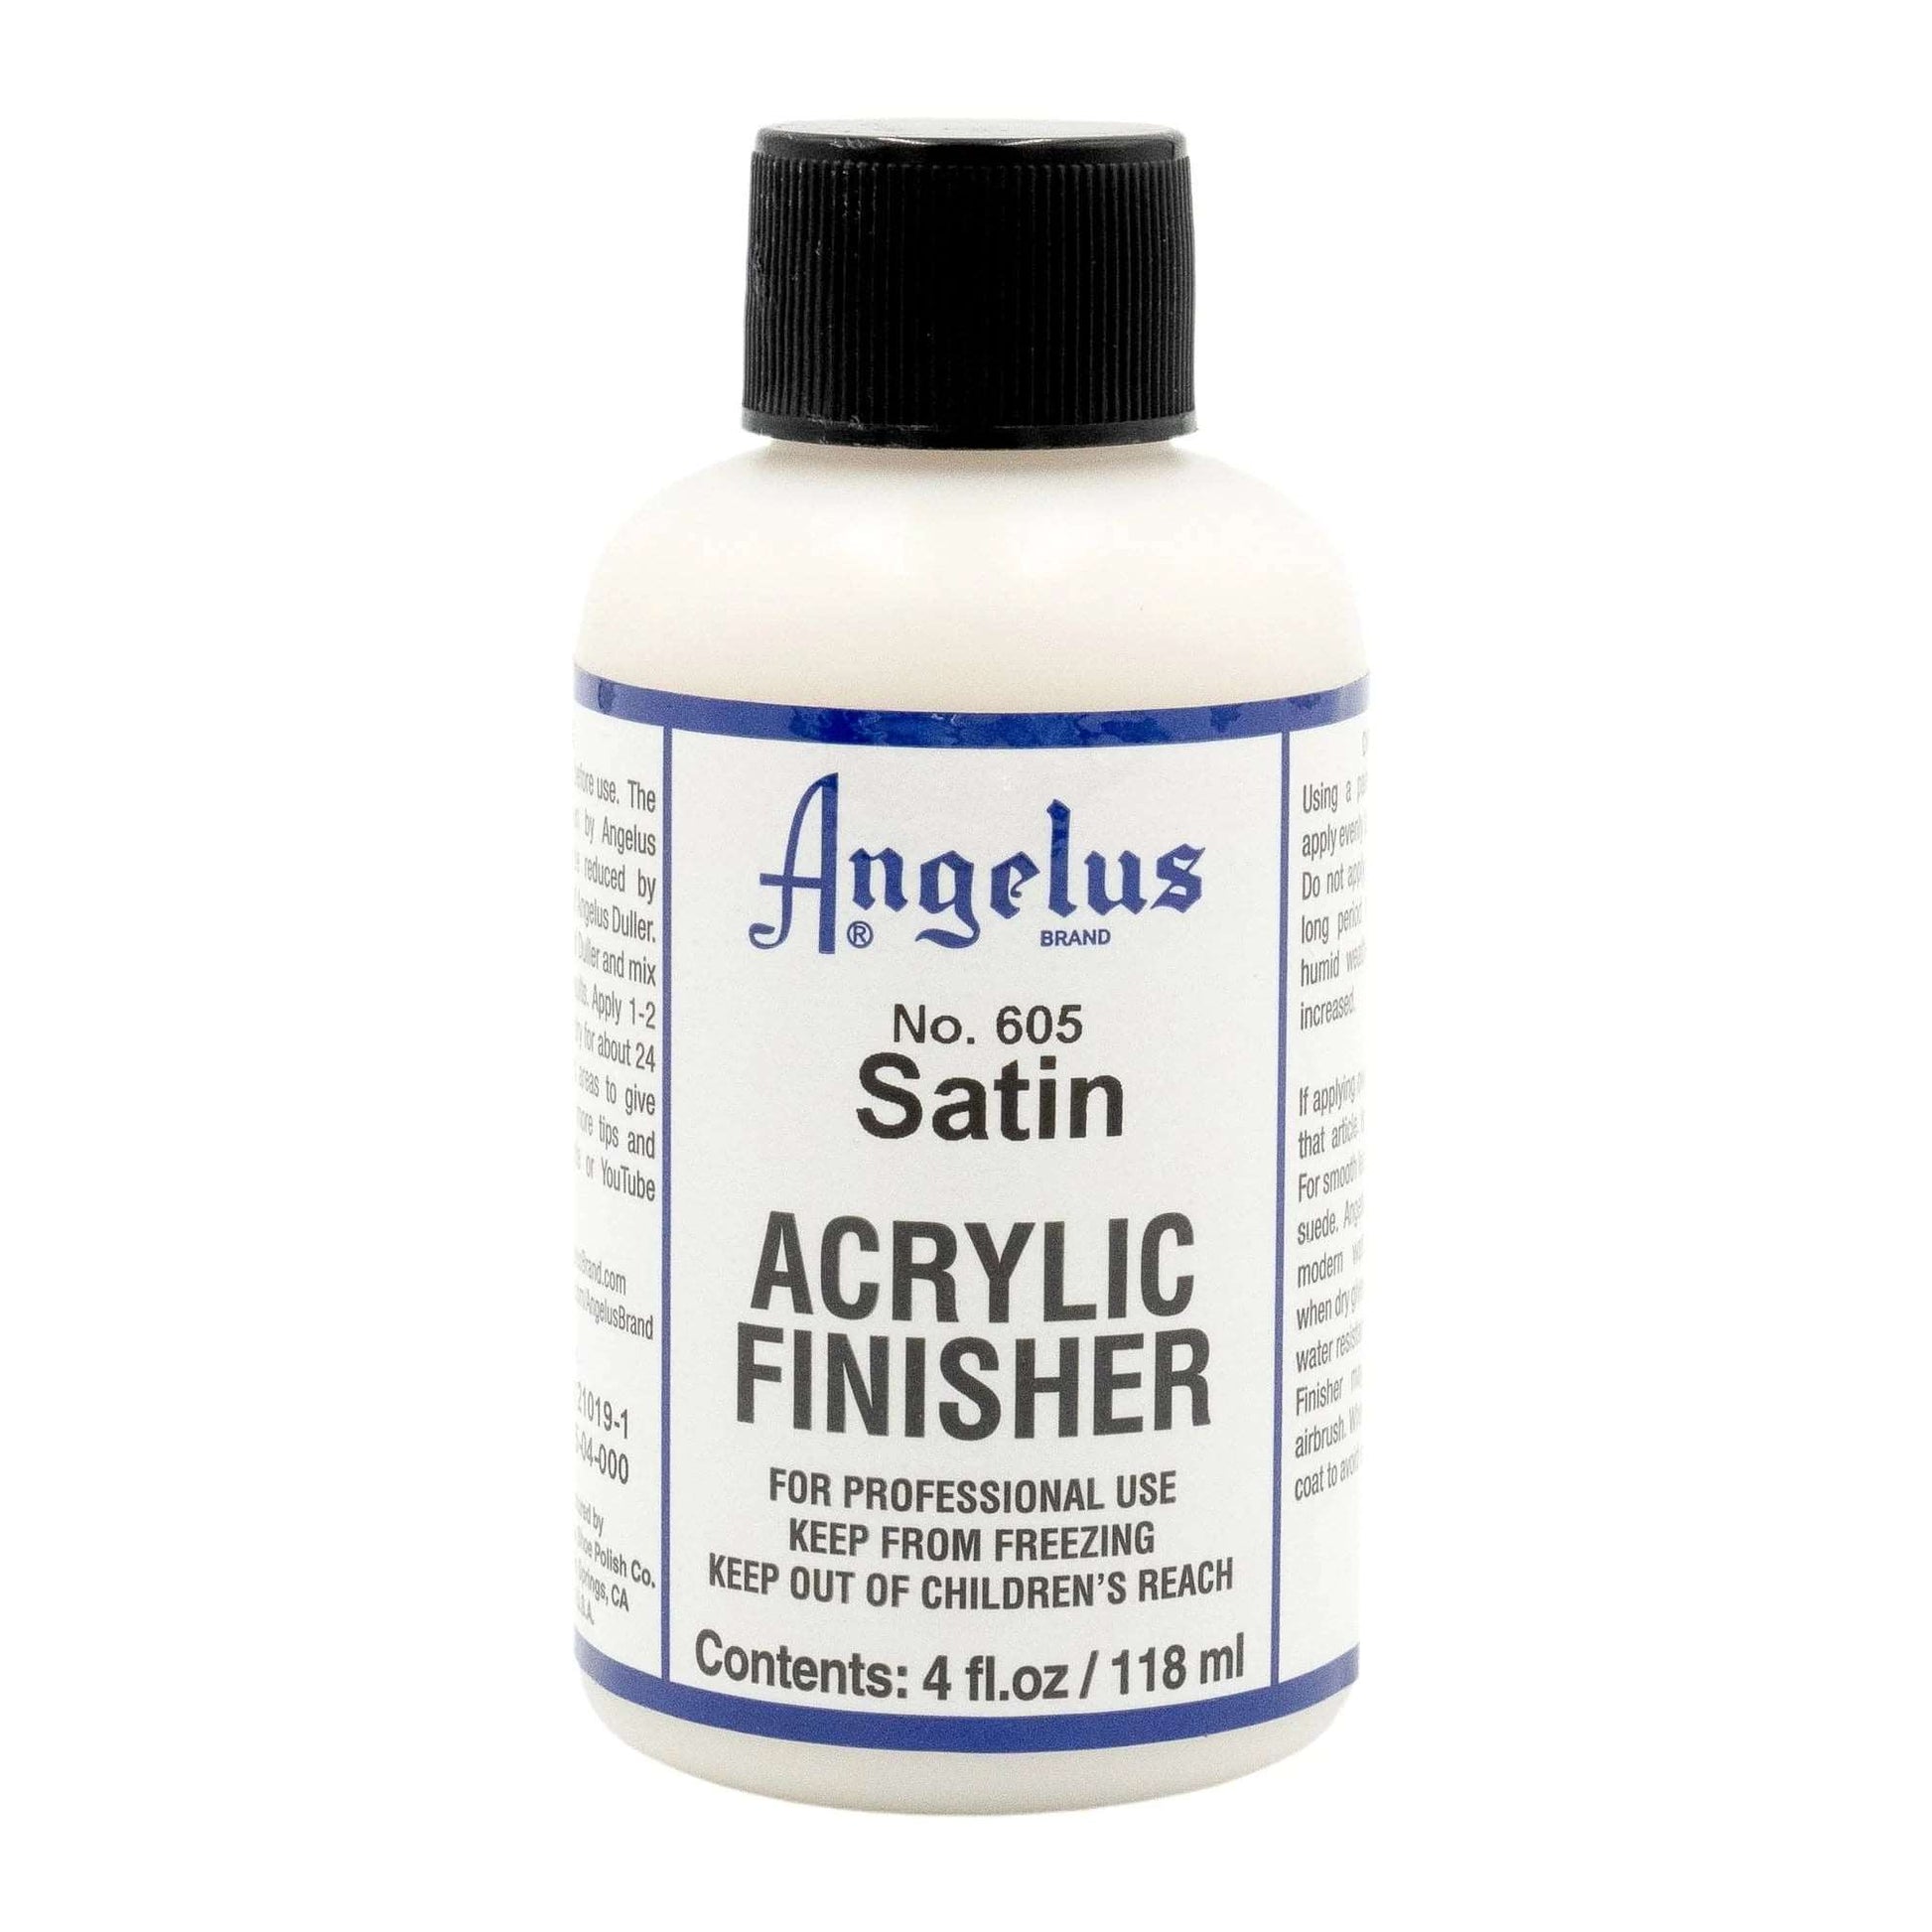 ANGELUS No. 605 Satin Acrylic Finisher